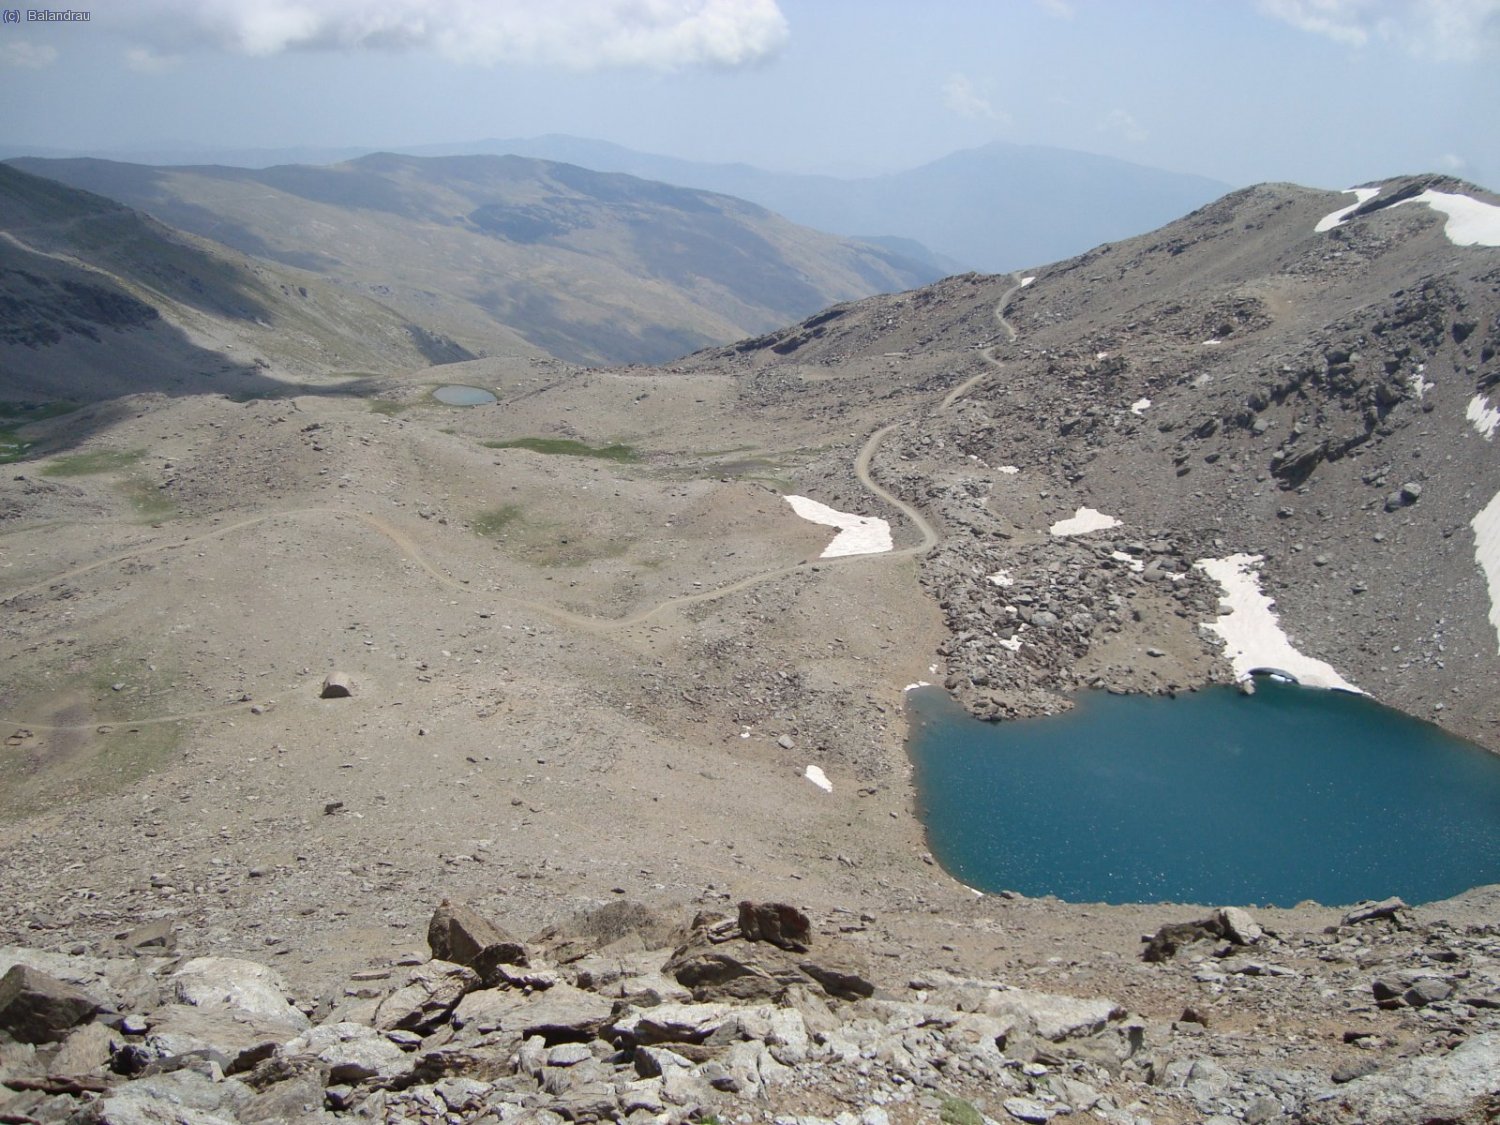 Bajando a la Laguna y al Refugio de la Caldera 3050 mts